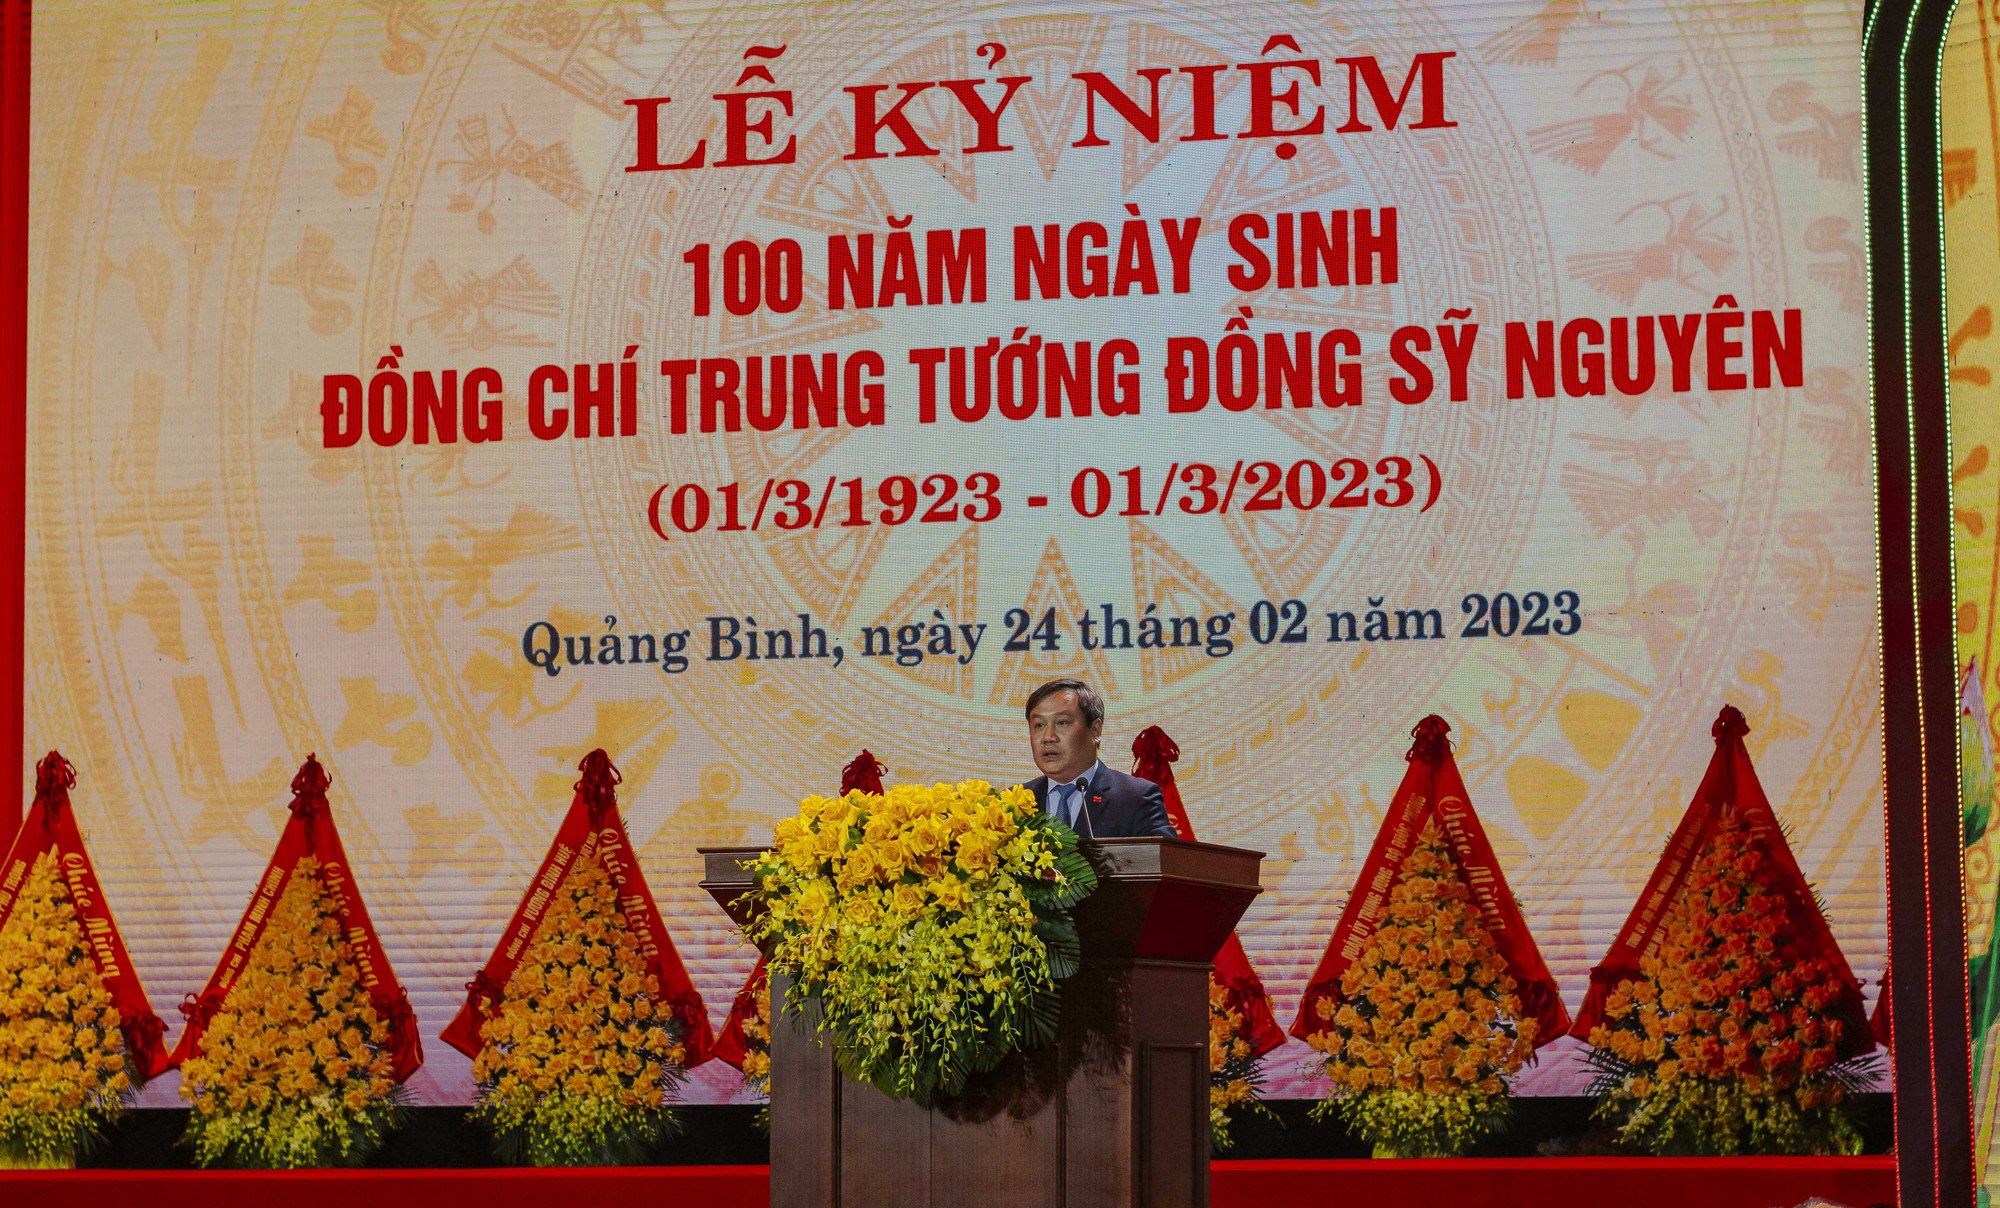 Quảng Bình: Kỷ niệm 100 năm ngày sinh trung tướng Đồng Sỹ Nguyên - Ảnh 2.